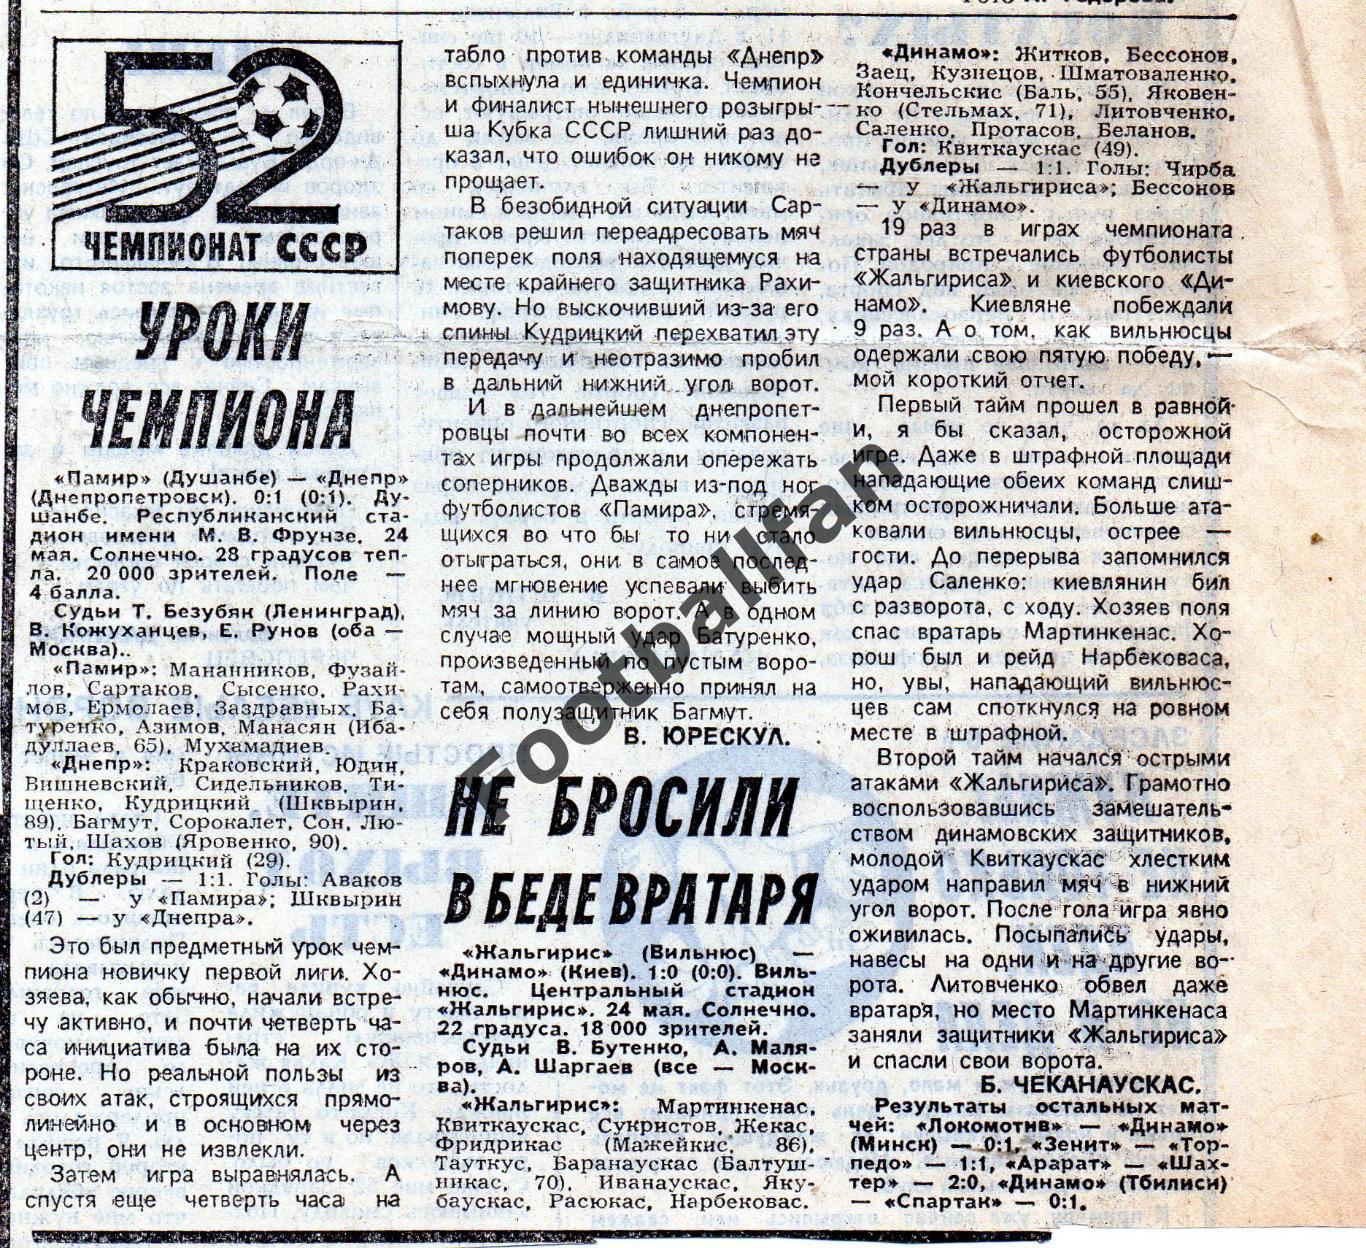 Жальгирис Вильнюс - Динамо Киев 24.05.1989